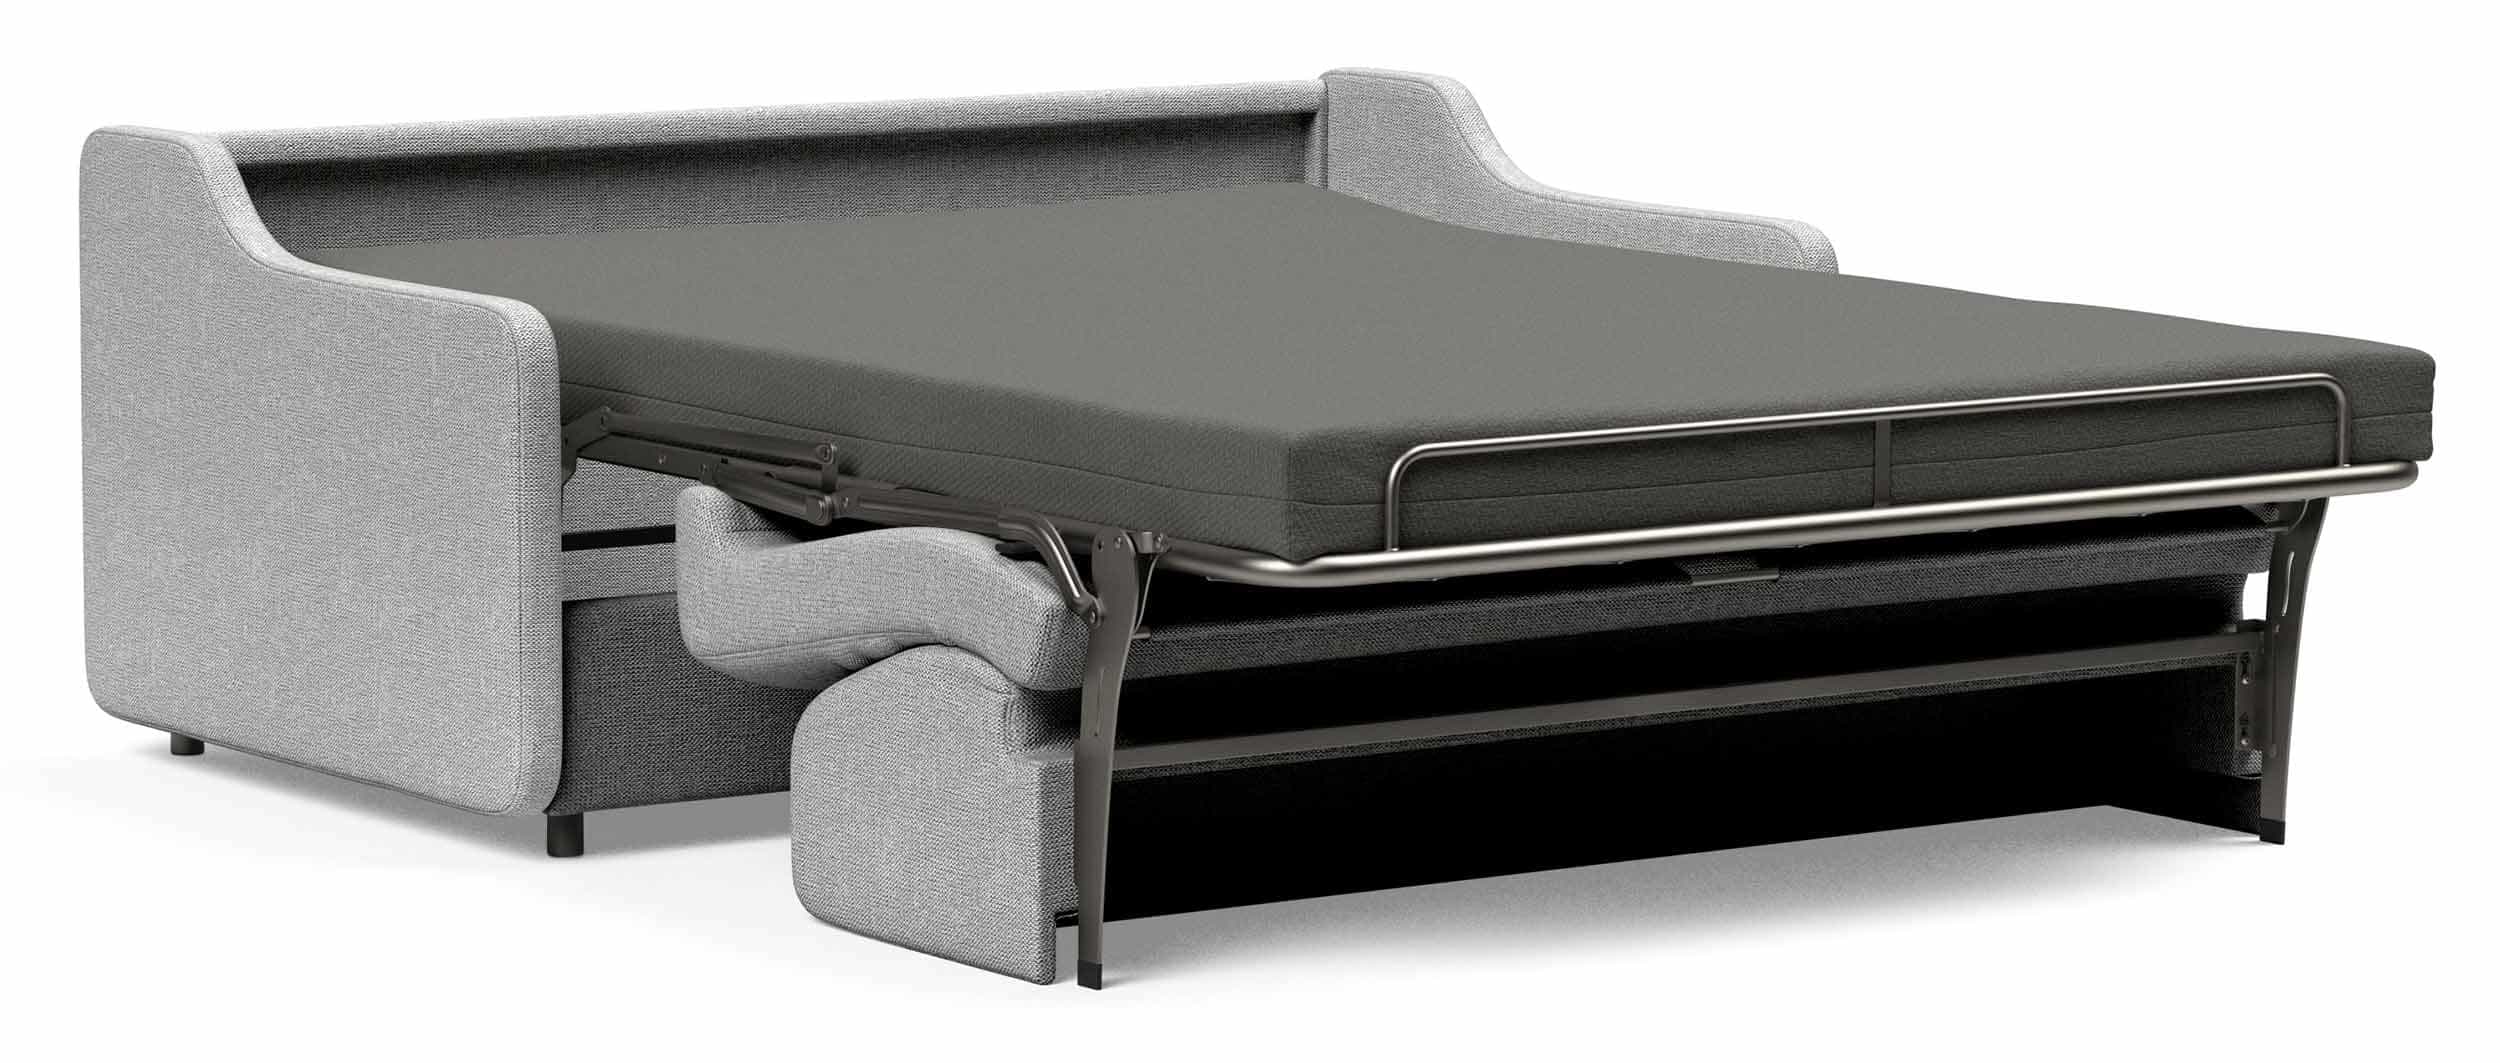 Sofabett VITHUS Schlafsofa von Innovation mit Armlehnen, Dauerschläfer für jeden Tag - 140x200 cm